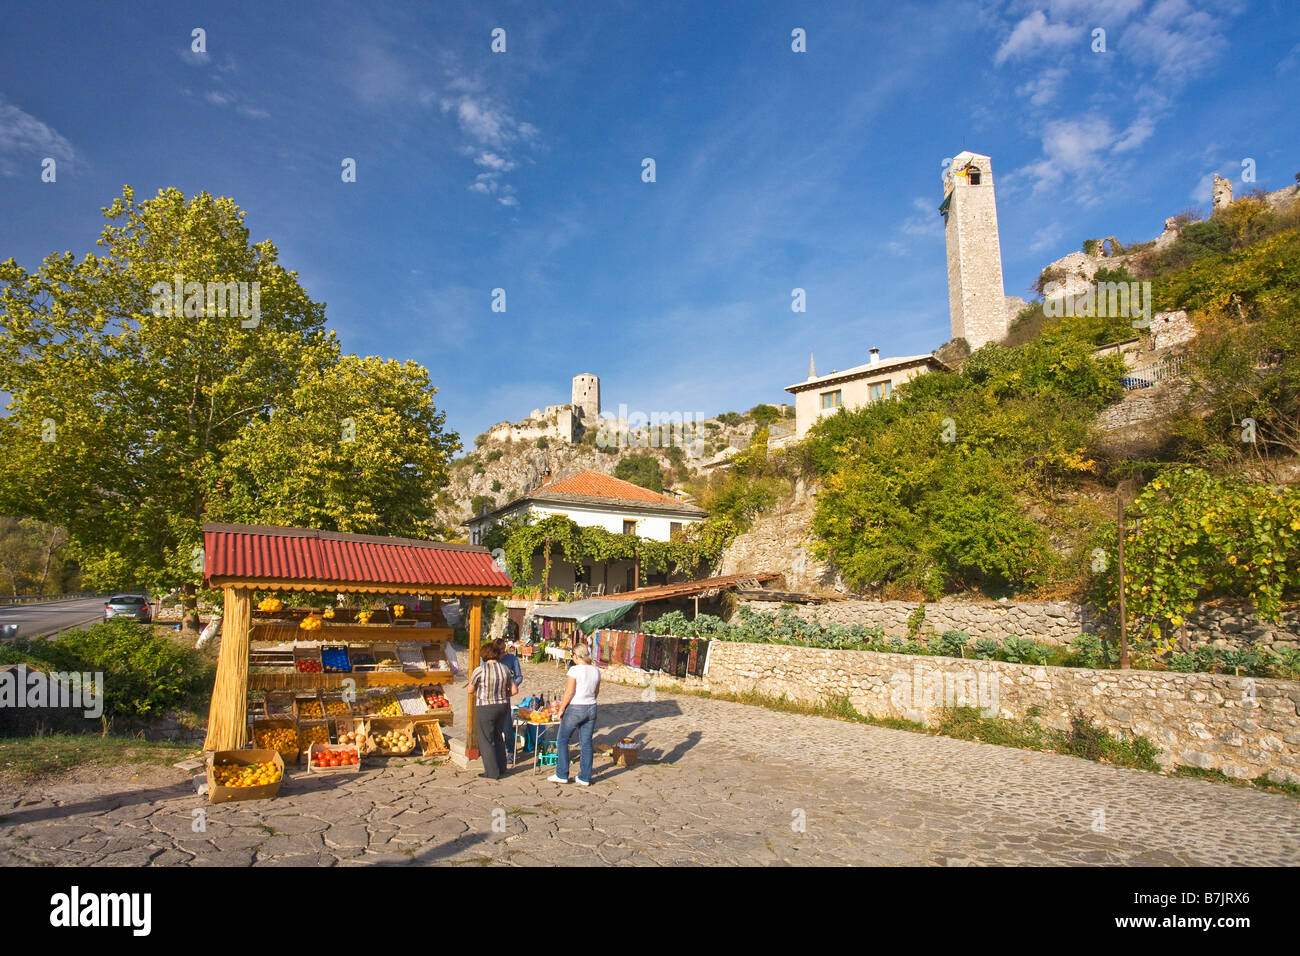 Historische Altstadt mit Obst-Verkäufer Bosnien Herzegowina Europa Stockfoto